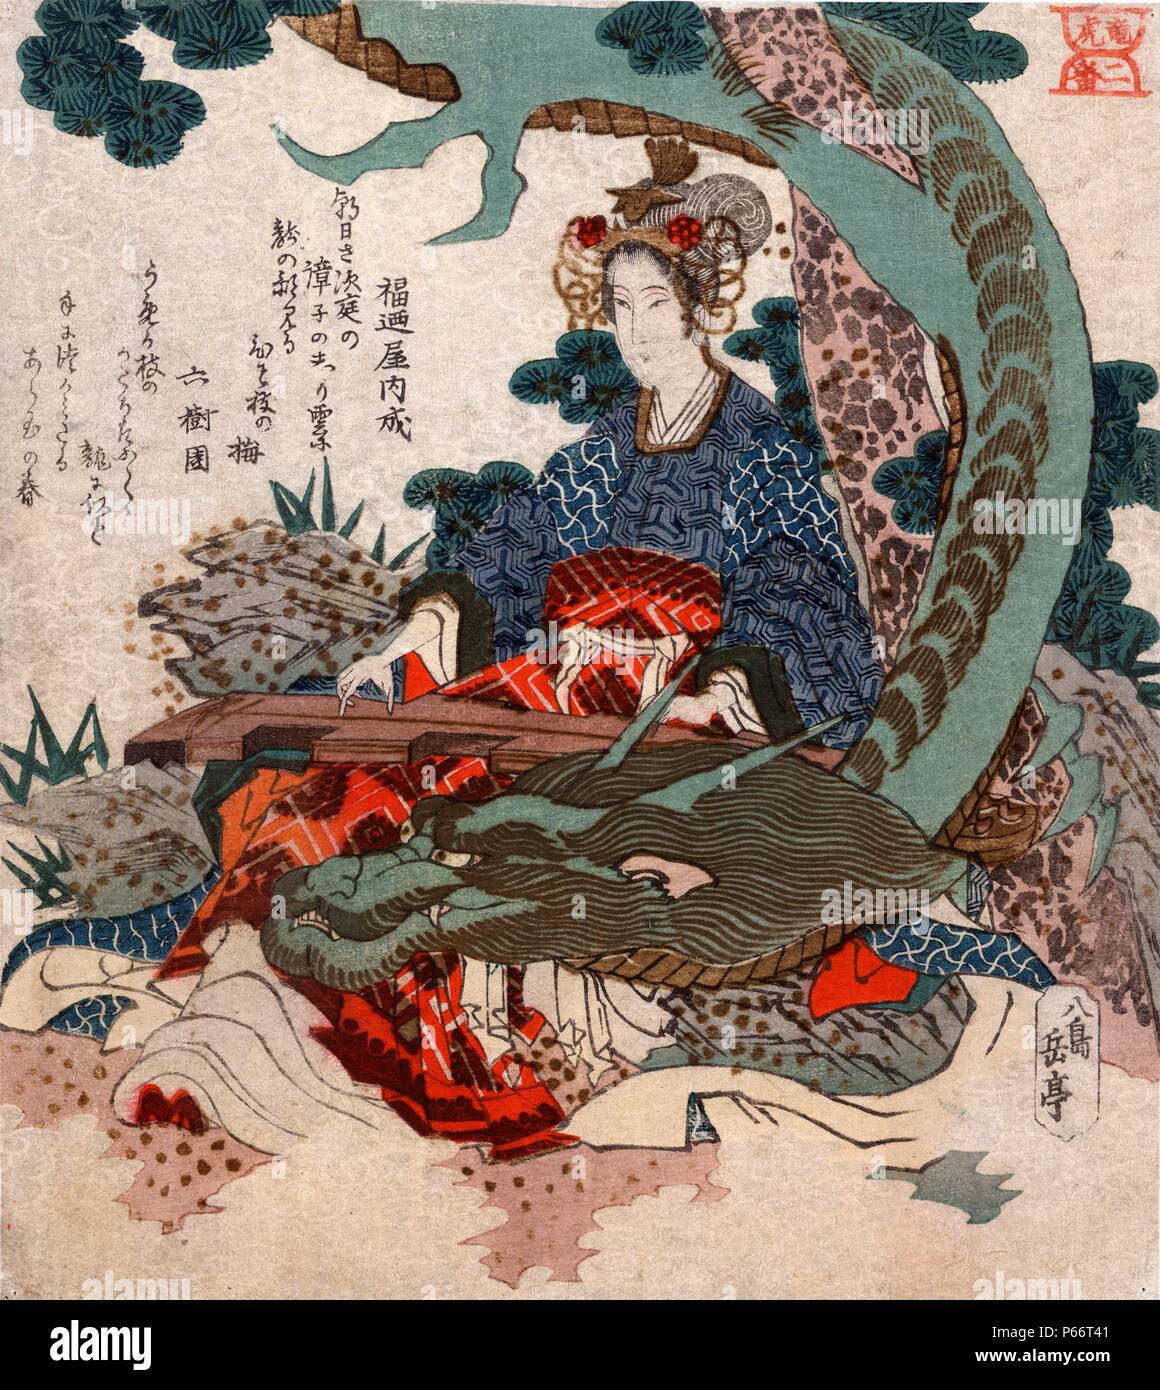 Ryu ko niban : Tigre et dragon no 2 Par Gogaku Yajima, active du 19e siècle, artiste japonais. Imprimé entre 1818 et 1830. Imprimer montre une femme jouant de l'koto avec un dragon enroulé autour d'elle. Banque D'Images